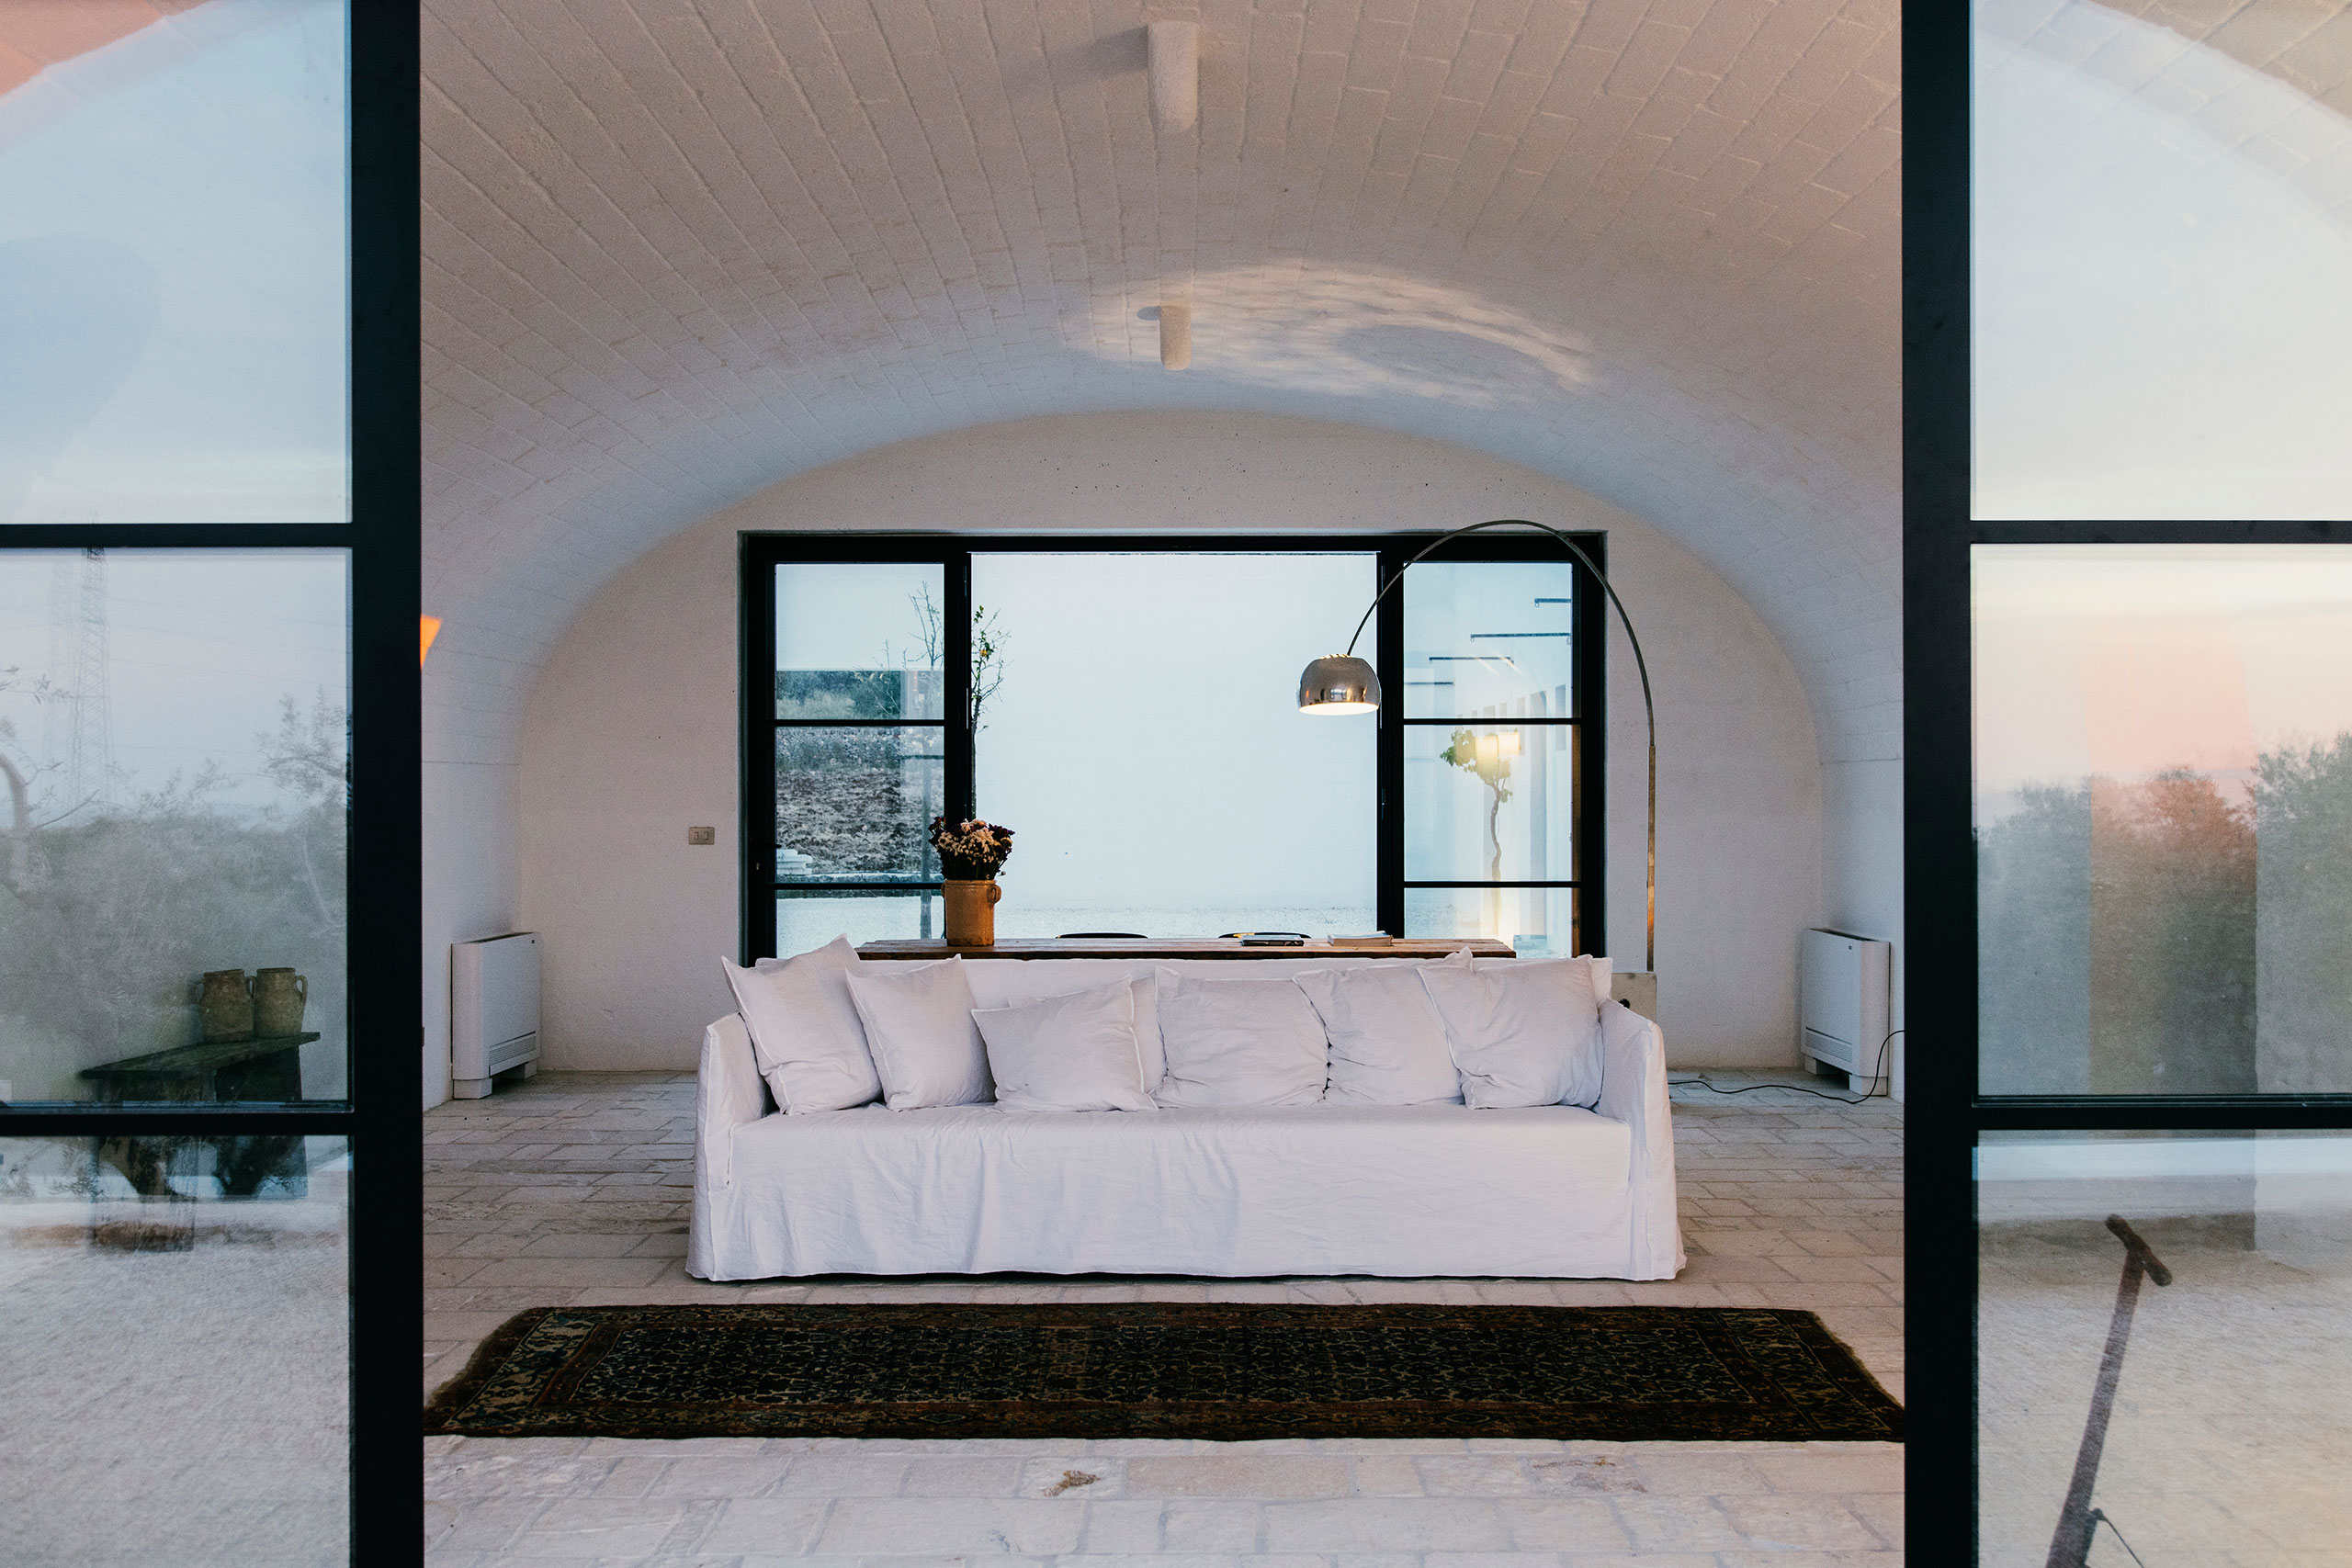 masseria design, italian interiors, puglia design, italianbark interior design blog, masseria moroseta